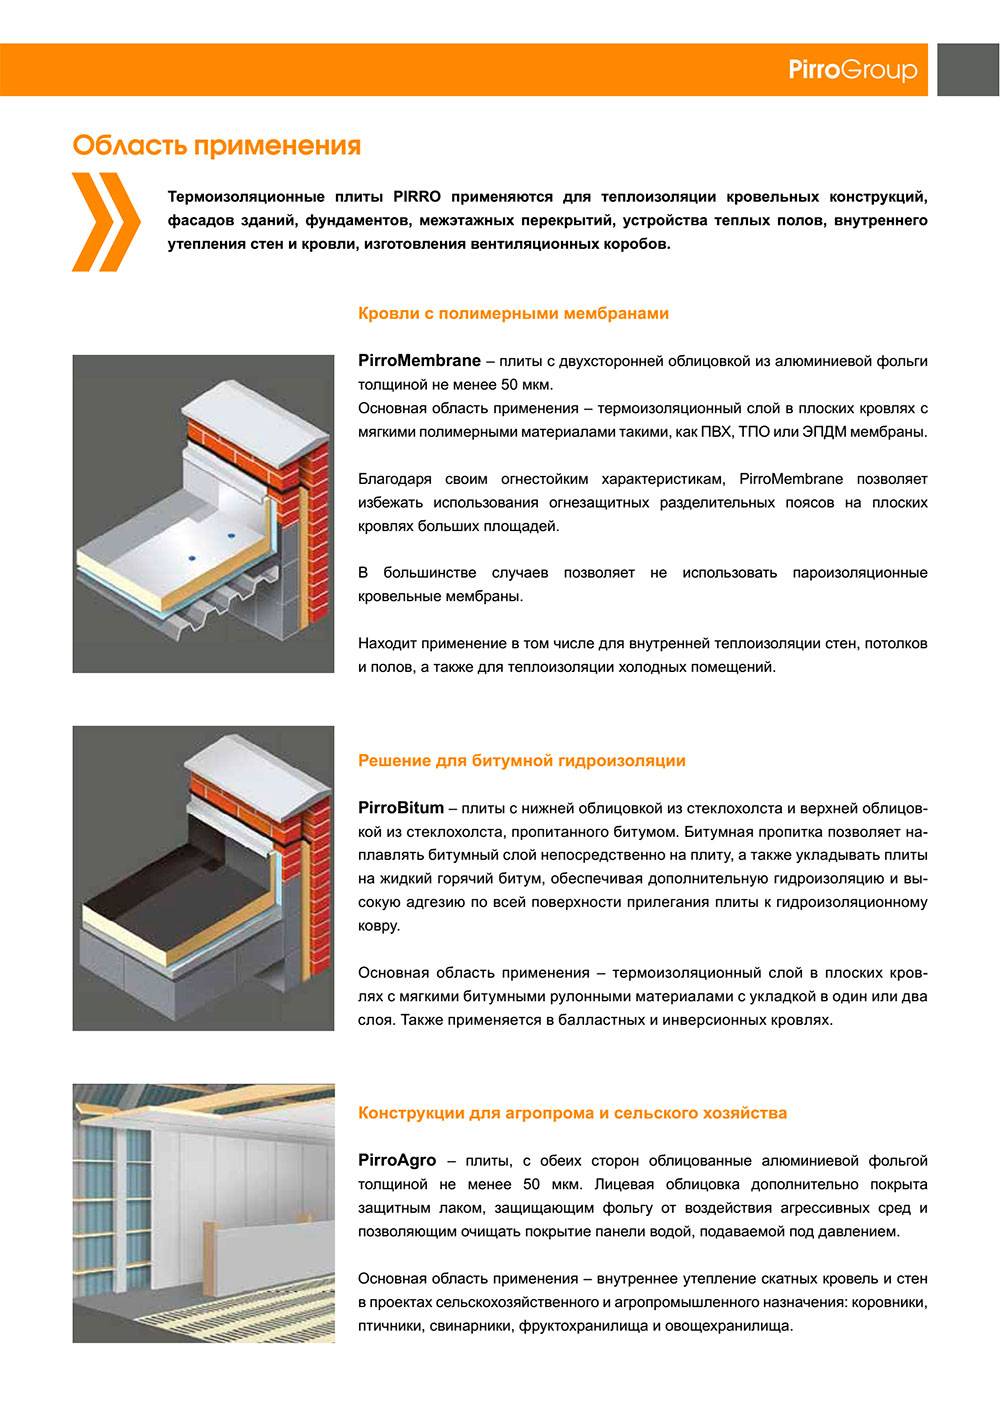 Logicpir стена — теплоизоляционные плиты нового поколения! - половед.рф